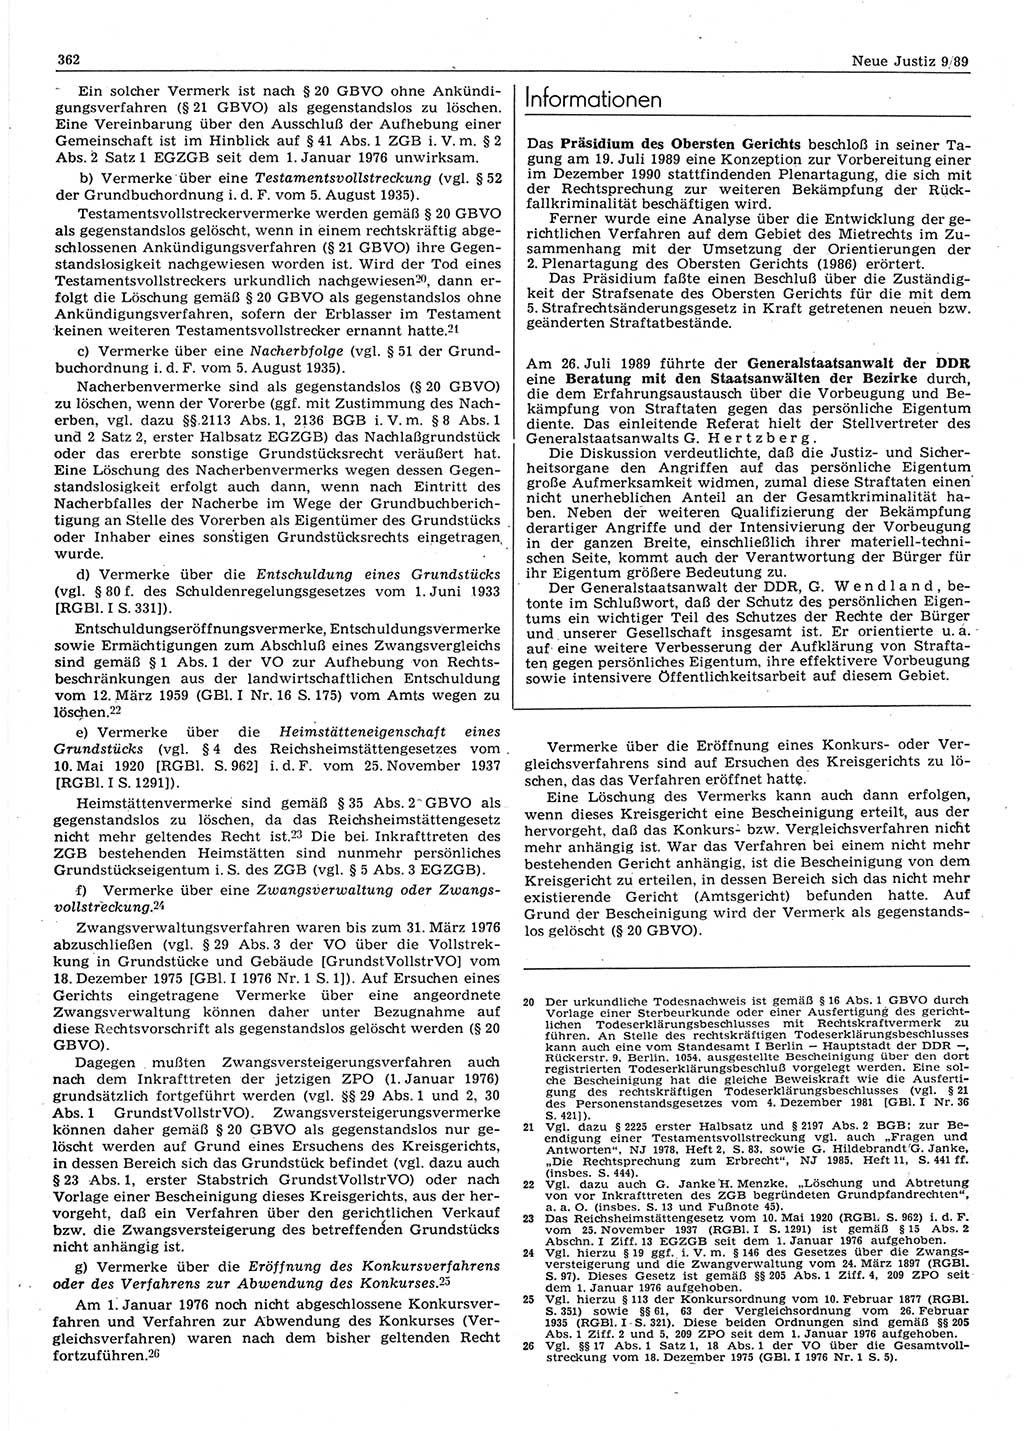 Neue Justiz (NJ), Zeitschrift für sozialistisches Recht und Gesetzlichkeit [Deutsche Demokratische Republik (DDR)], 43. Jahrgang 1989, Seite 362 (NJ DDR 1989, S. 362)